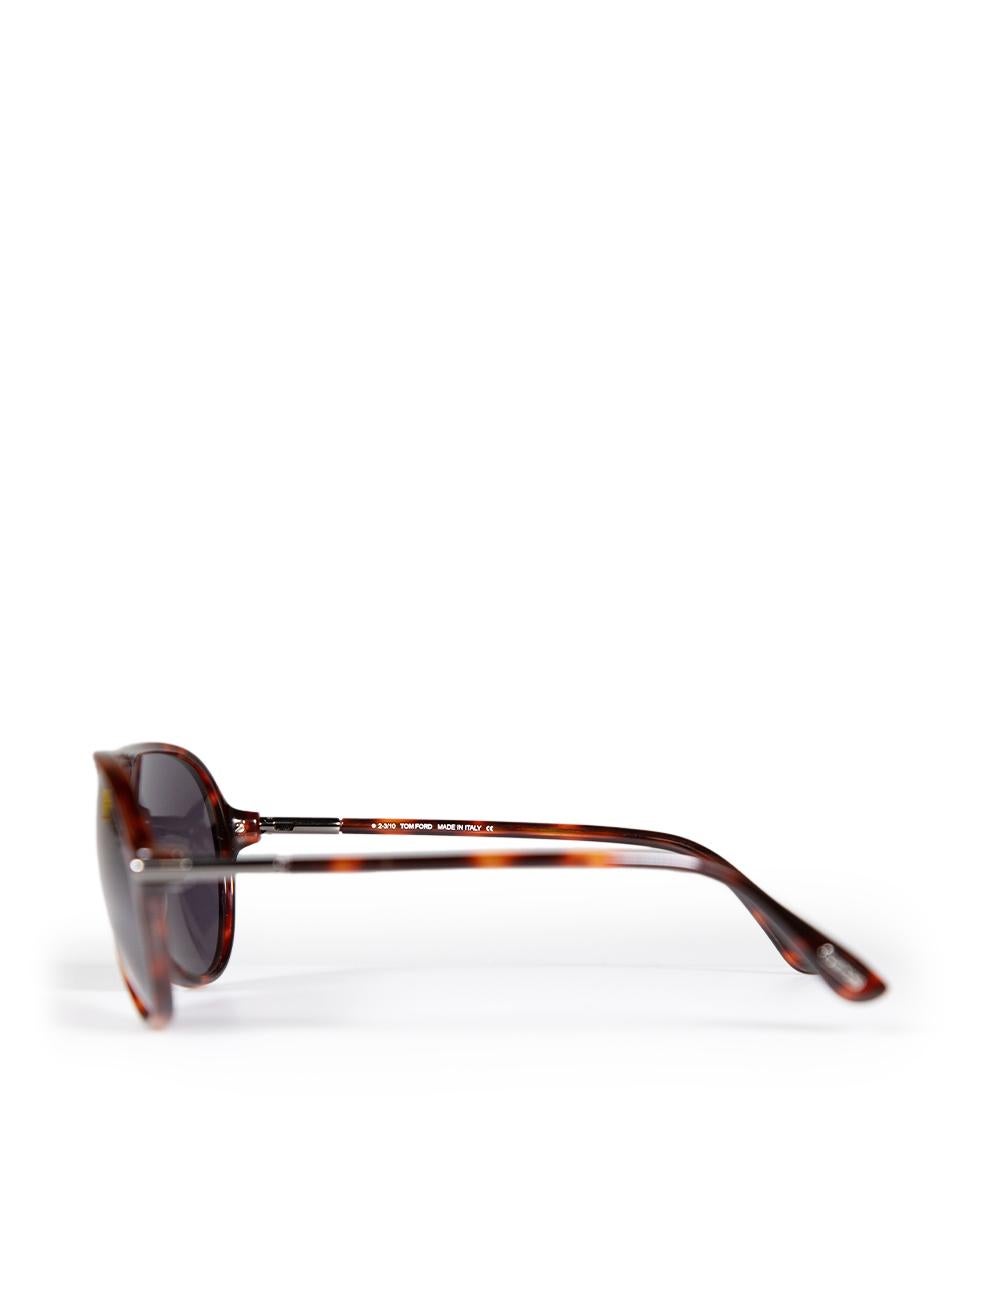 Tom Ford Red Havana Tortoiseshell Leopold Sunglasses For Sale 1